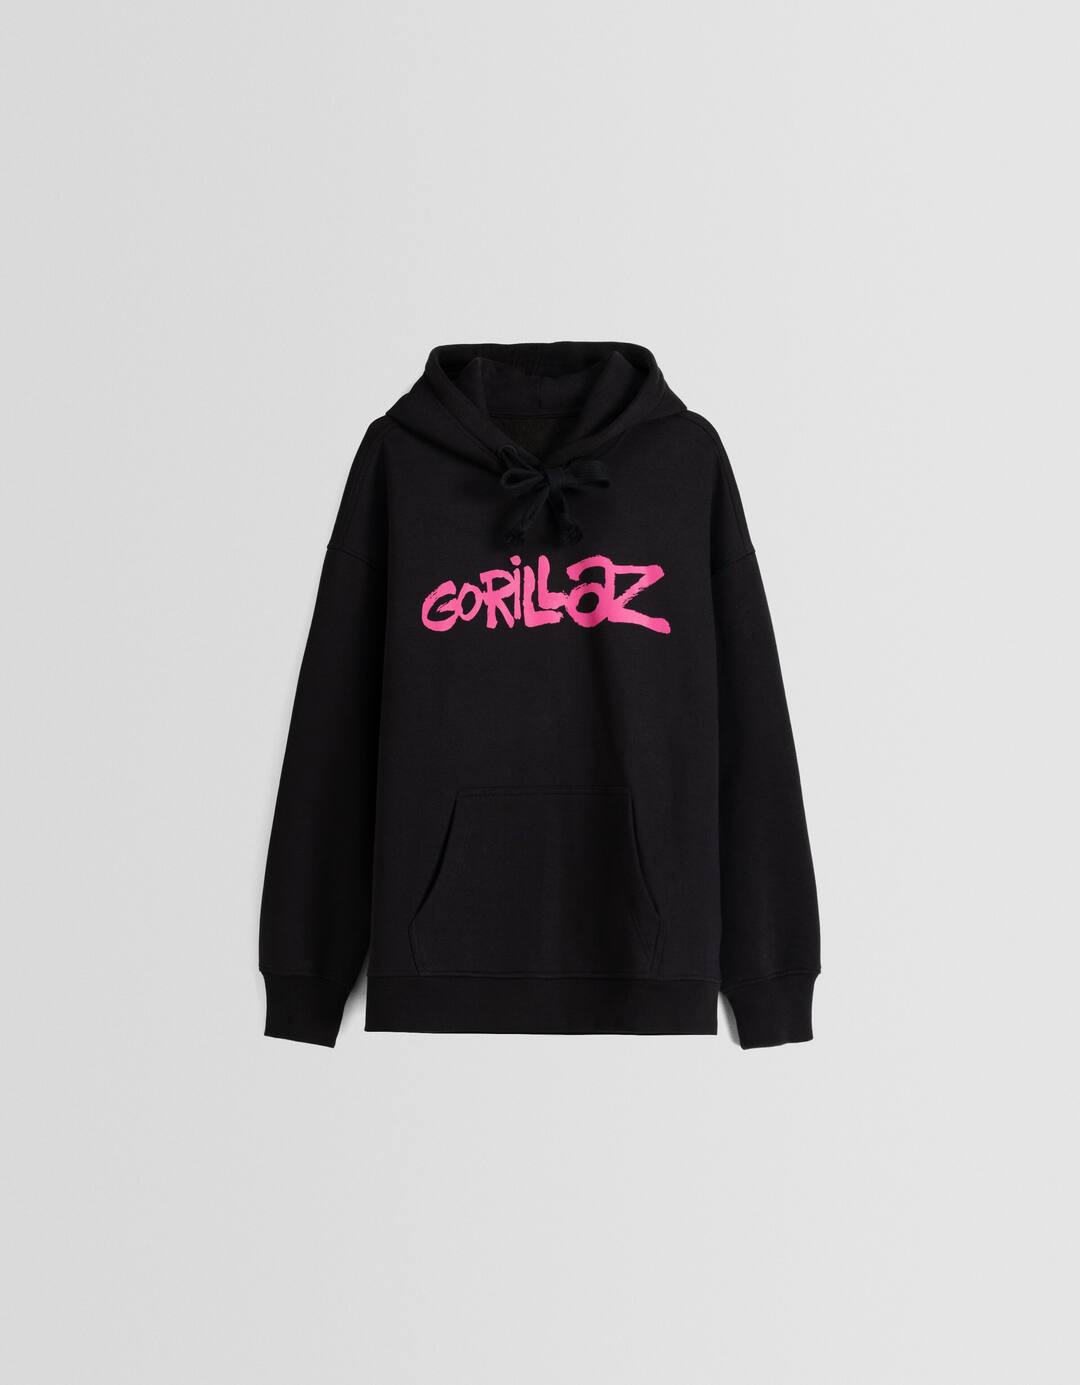 Oversize Gorillaz print hoodie